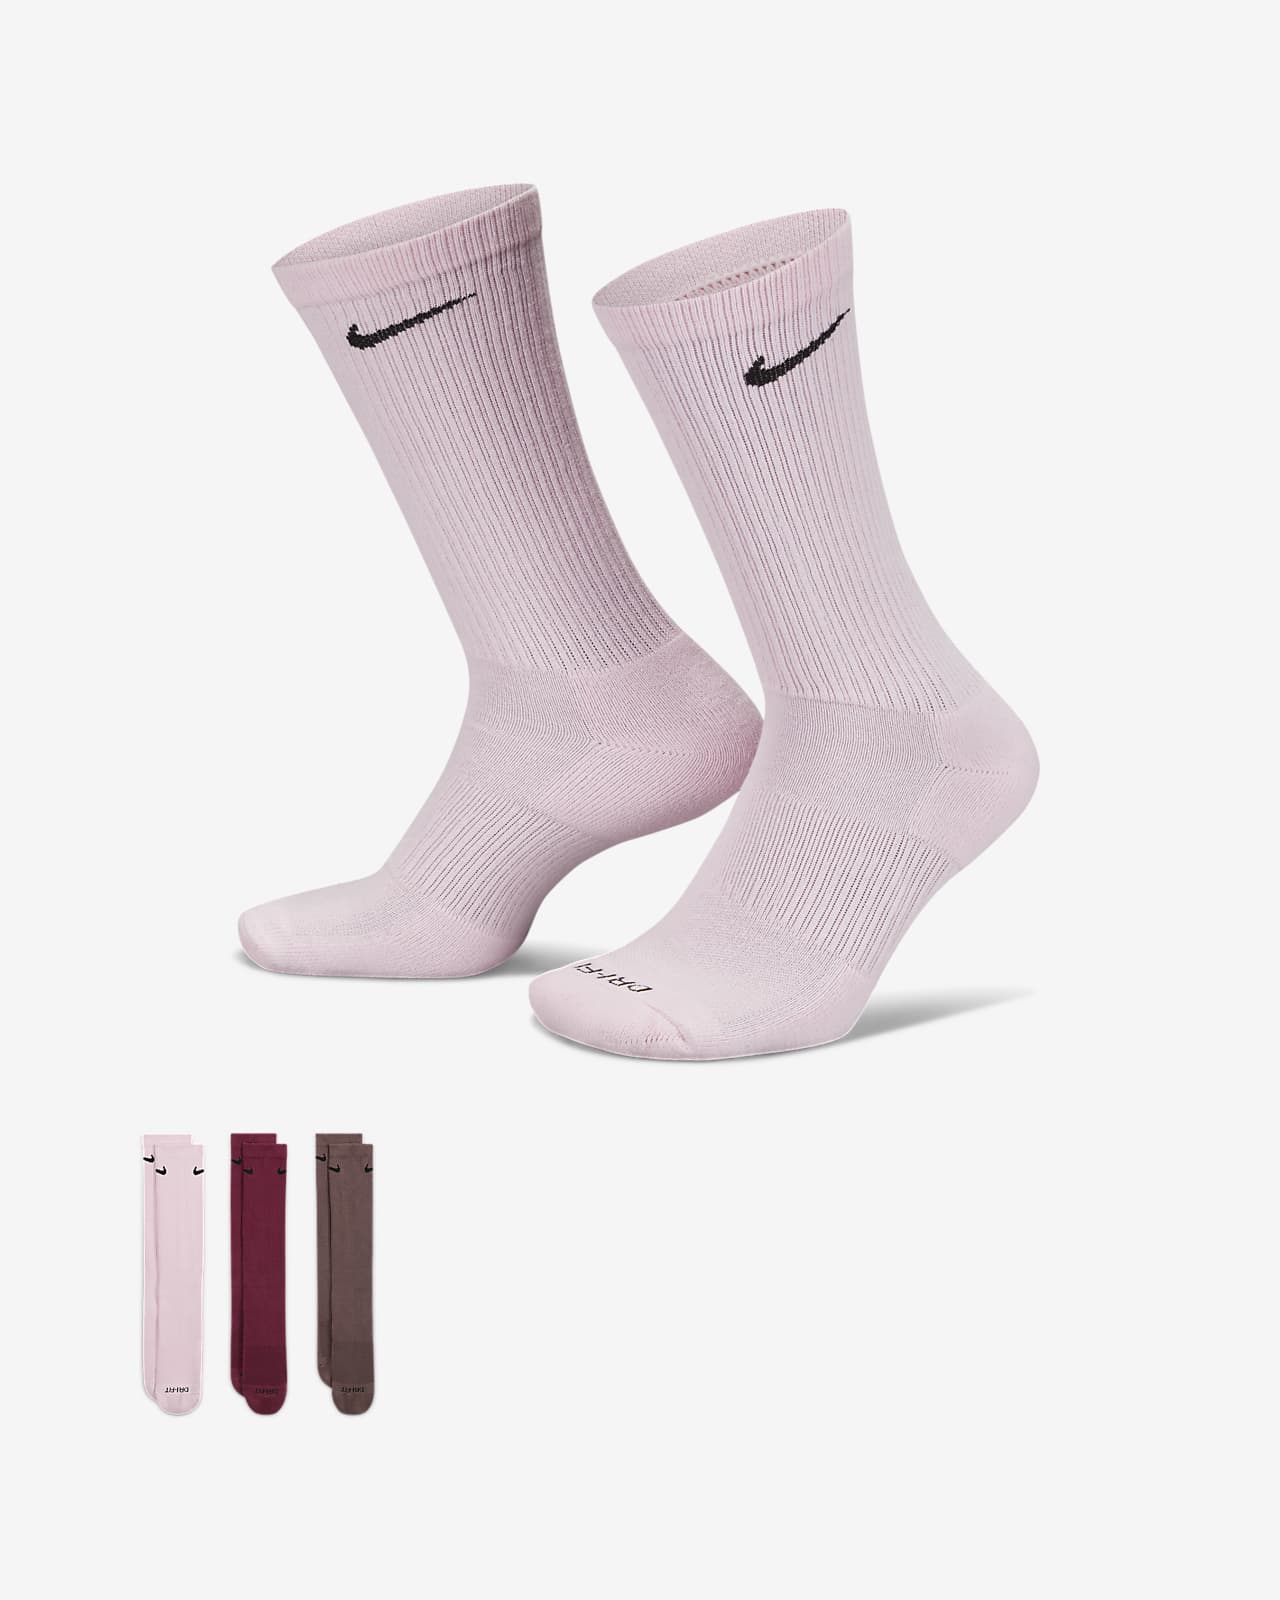 The Best Everyday Socks for Men